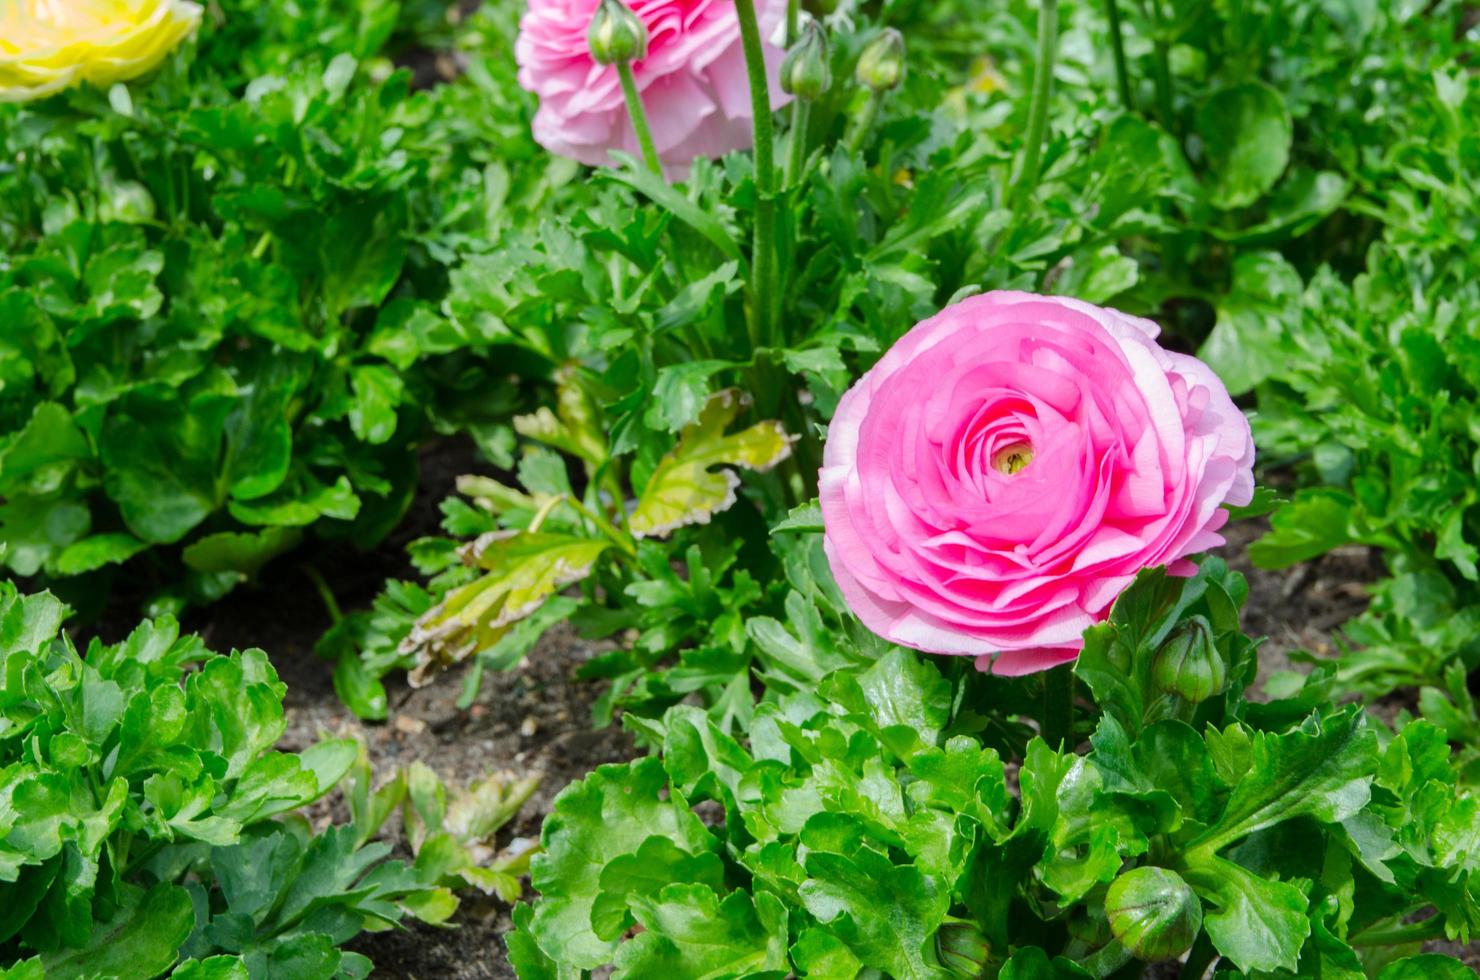 lief roze mooi roos bloem met groen bladeren in de tuin. foto